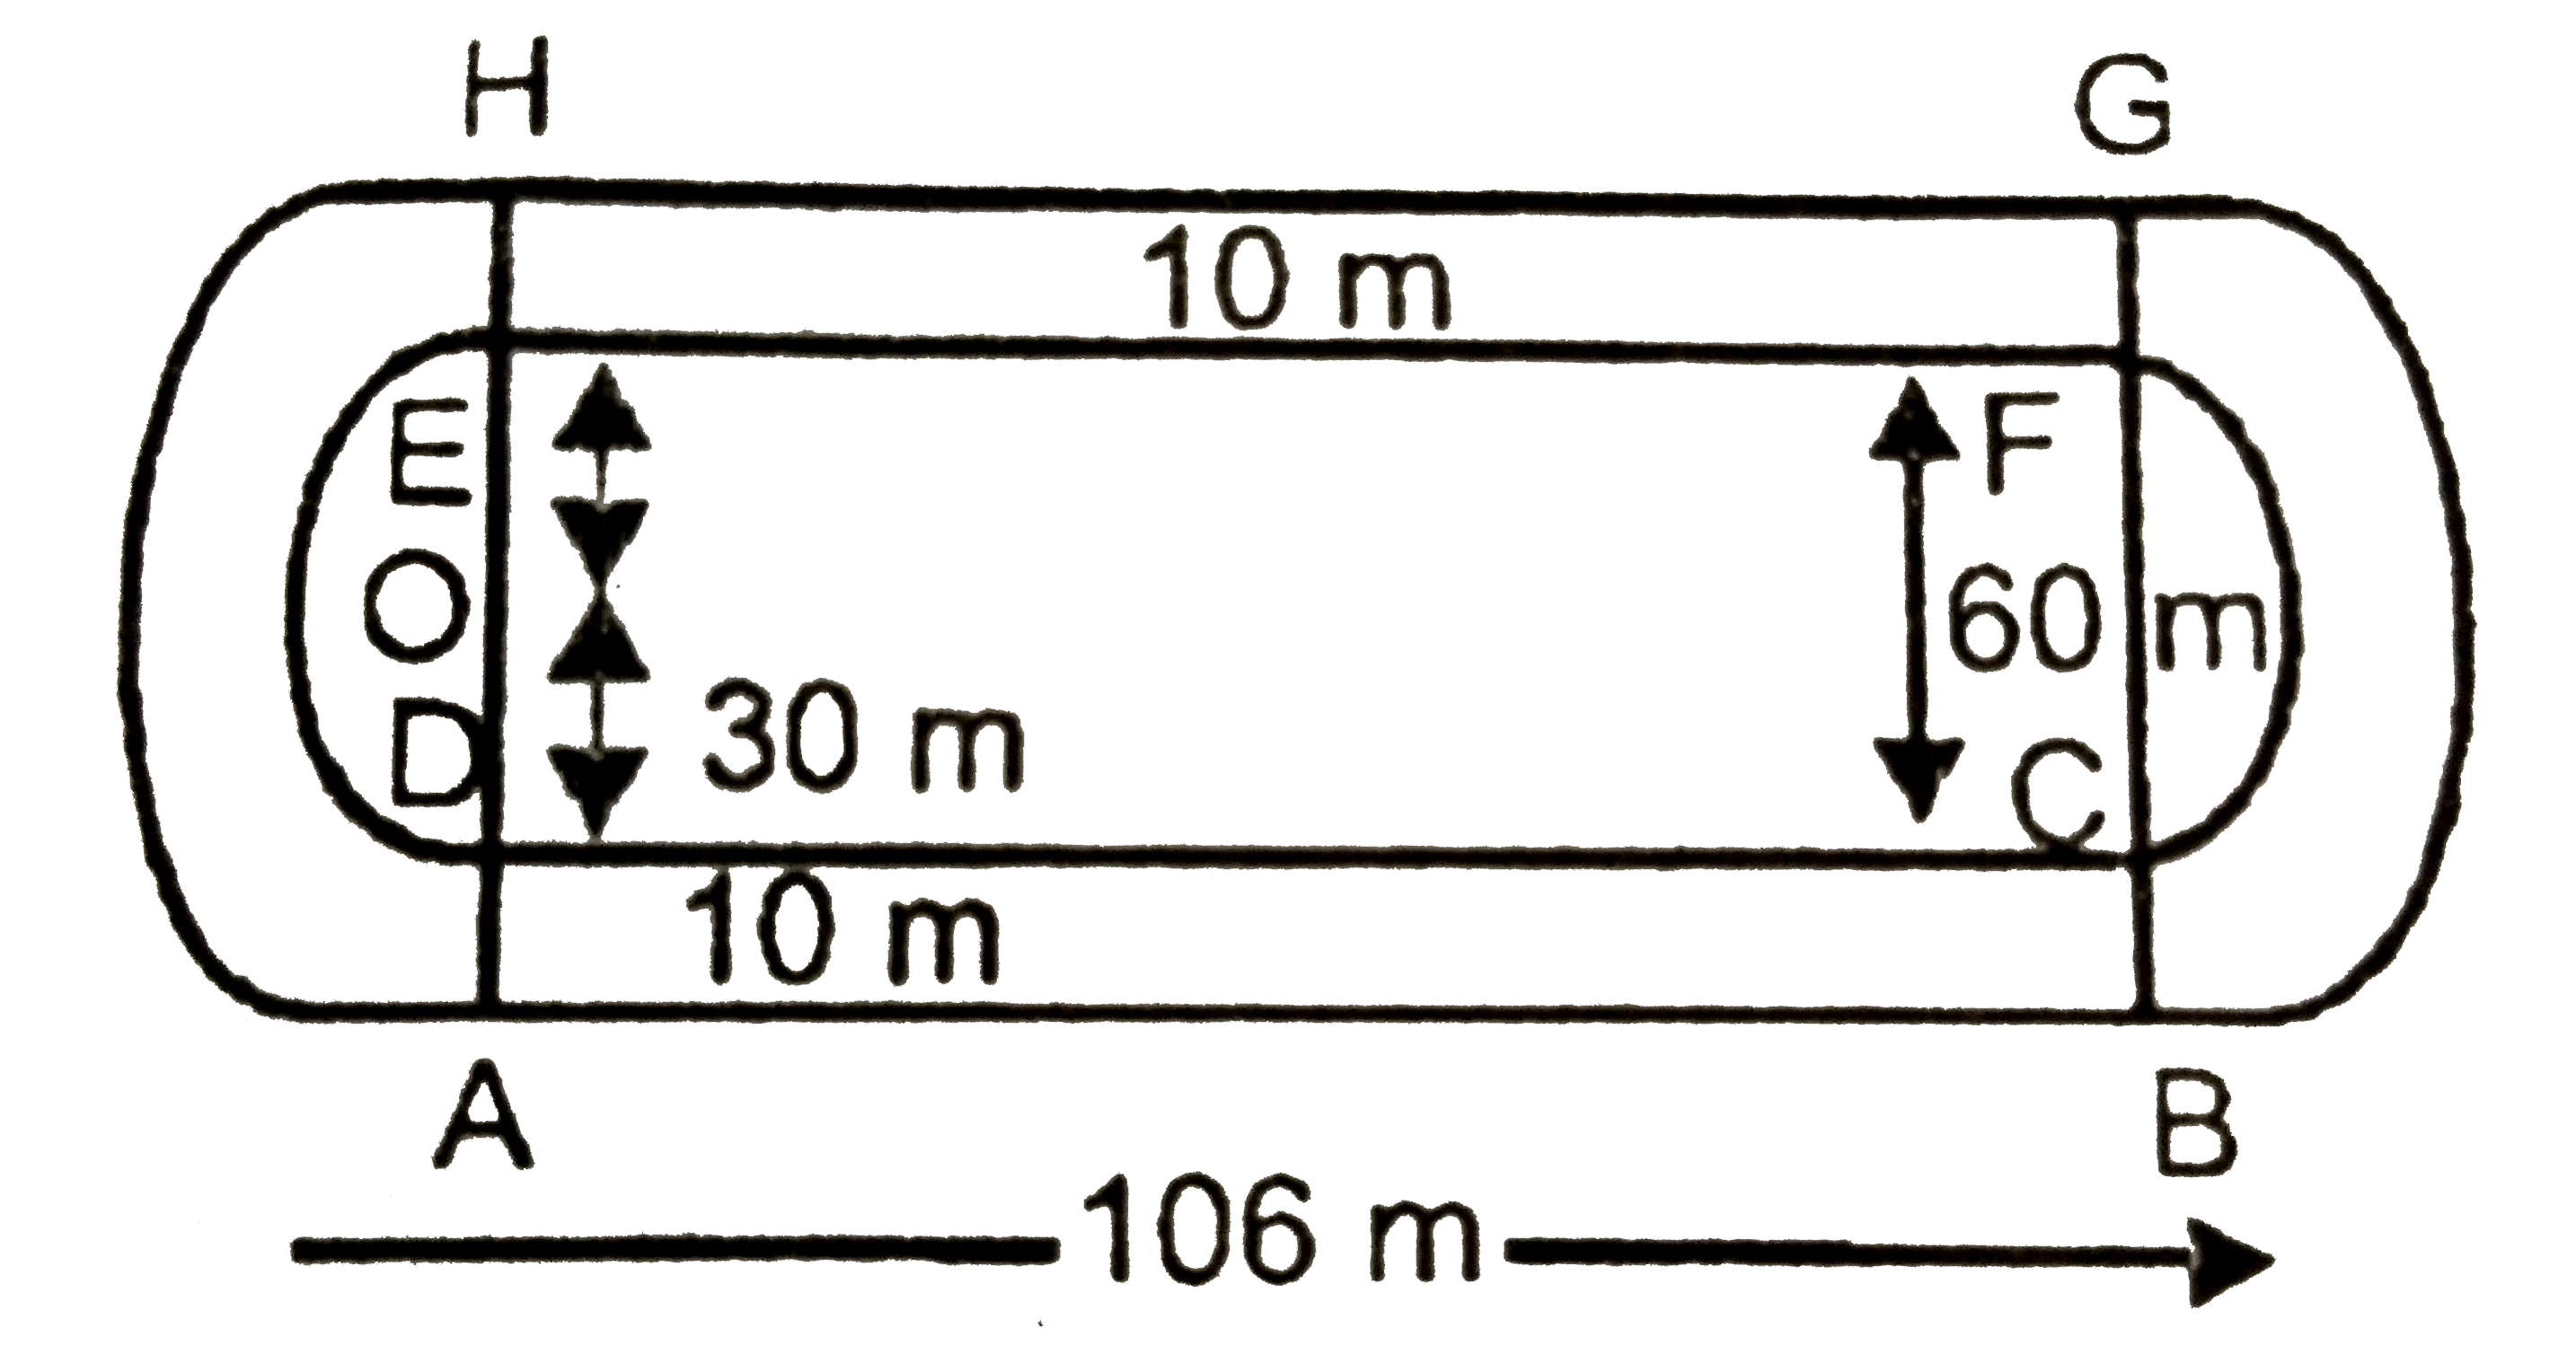 चित्र  में  एक  दौड़ने का  पथ दिखाया  गया है,  जिसके  बाएँ और  दाएँ सिरे  अर्द्धवृत्ताकार  है  दोनों  आंतरिक  समांतर  रेखाओं  के  बीच  की दुरी 60 m  है तथा  इनमे में  प्रत्येक  रेखाखण्ड  106 m  लम्बा  है।  यदि यह पथ 10 m  चौड़ा हो, तो  ज्ञात कीजिये :      (i)  पथ के  आंतरिक  किनारों  के अनुदिश  एक  पूरा  चक्कर  लगाने  में तय  की गई  दुरी       (ii)  पथ  का क्षेत्रफल।